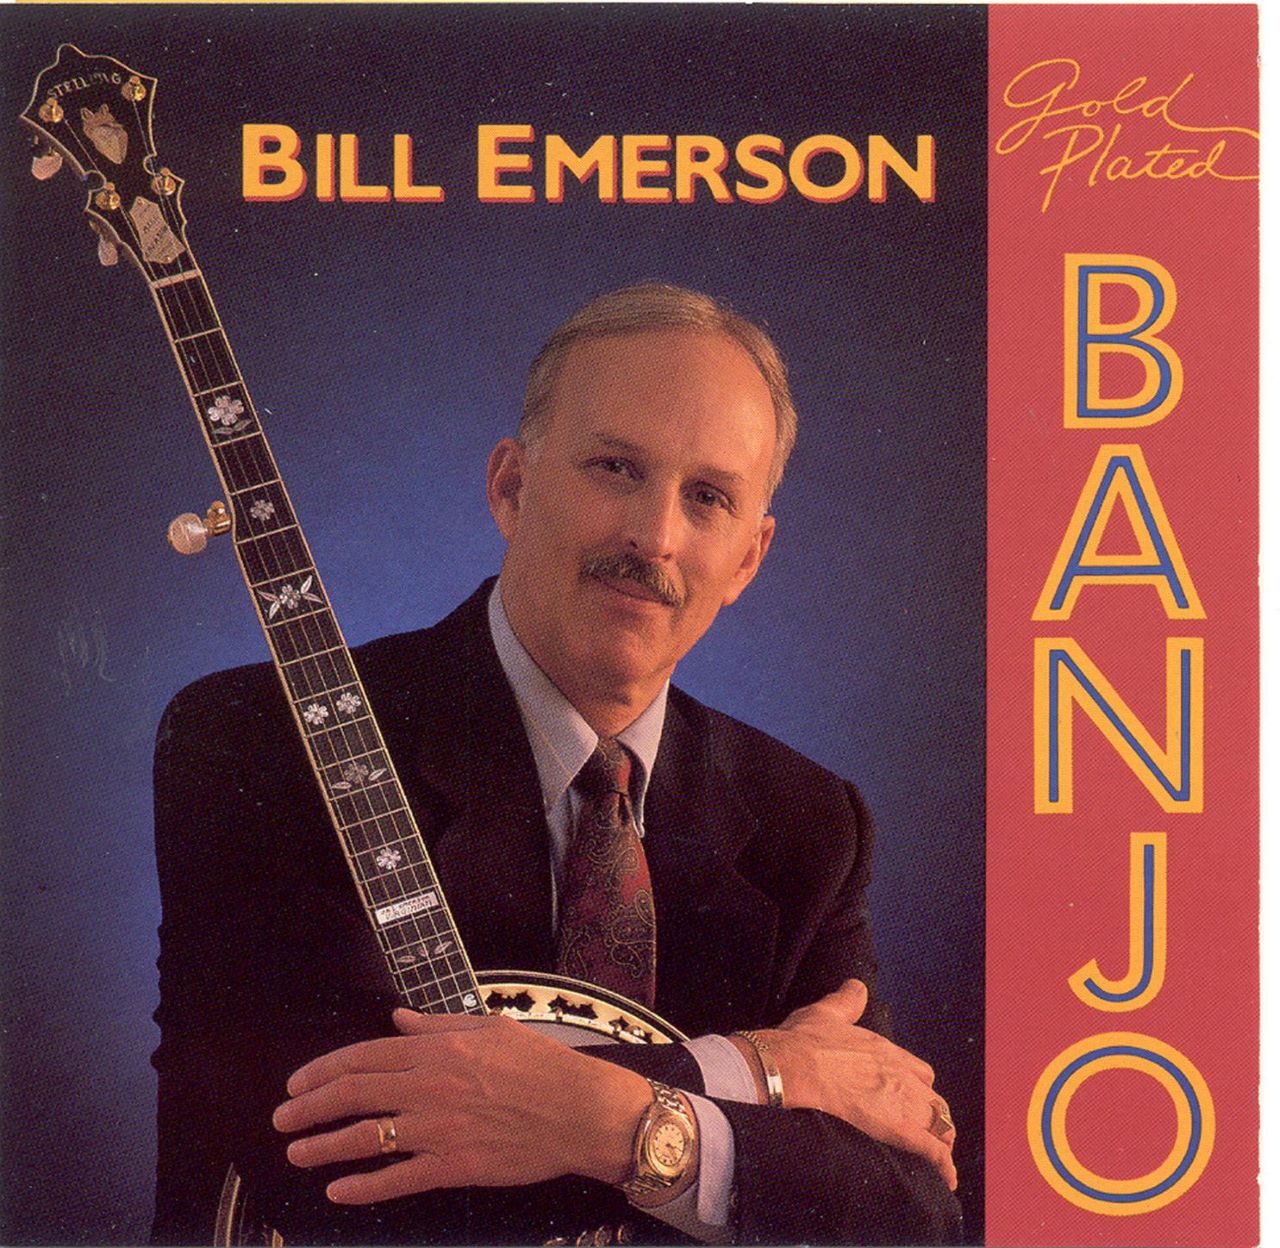 Bill Emerson - Gold Plated Banjo cover album